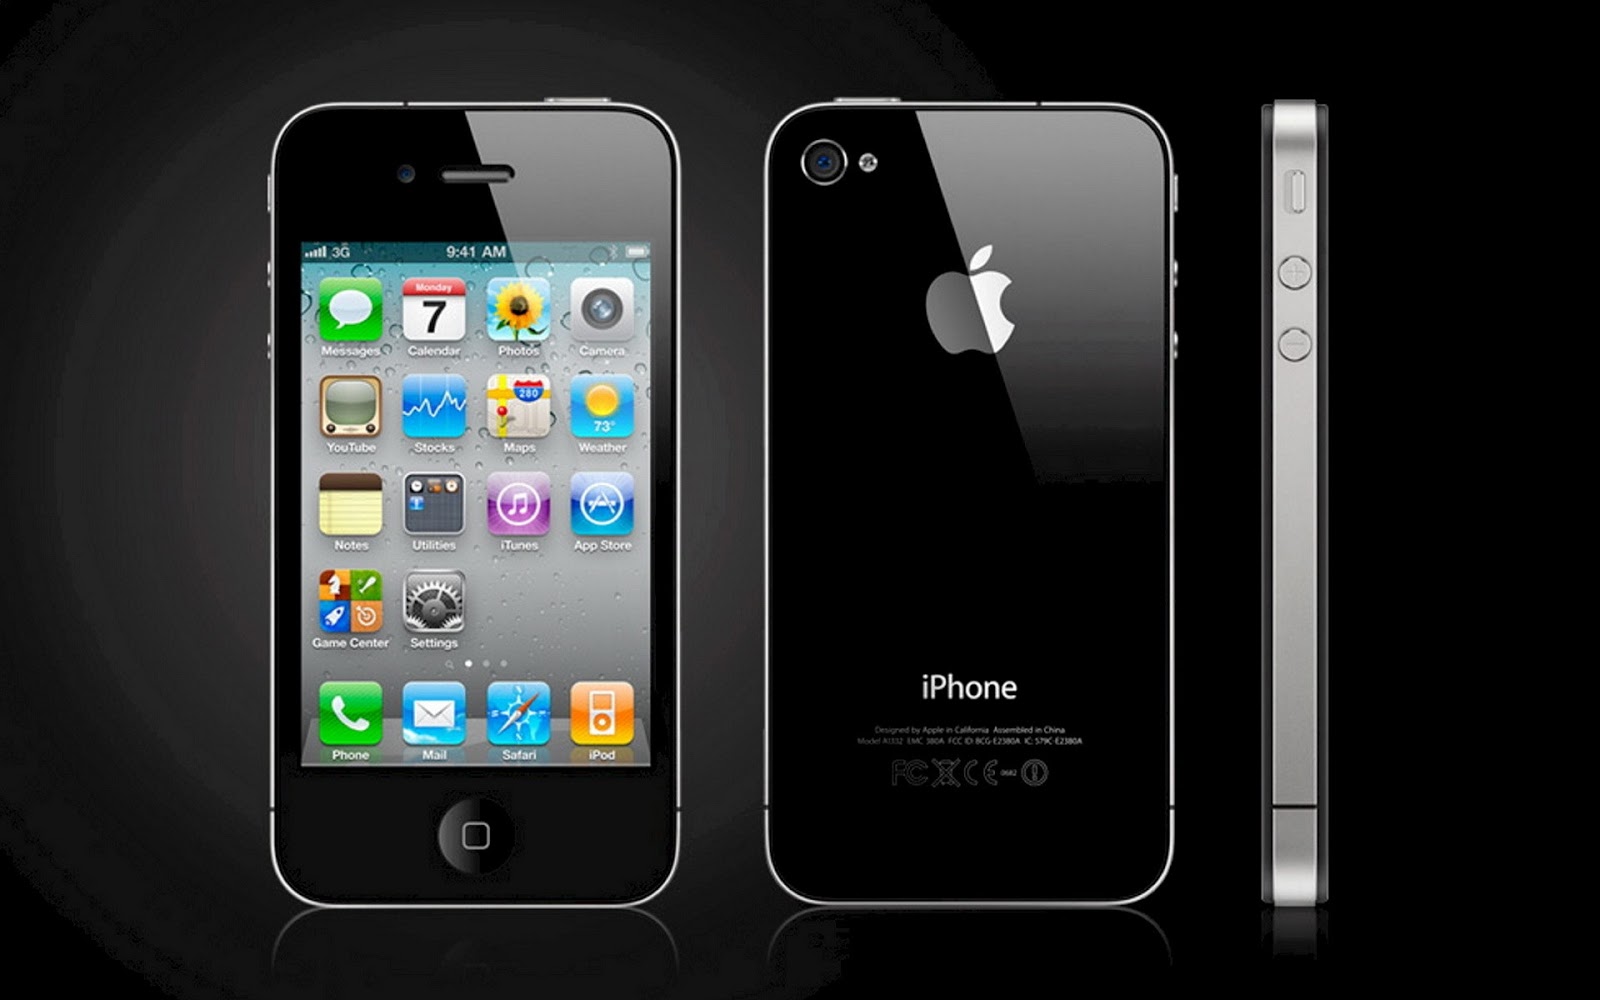 Daftar Harga iPhone Baru dan Bekas Terbaru Juli 2013